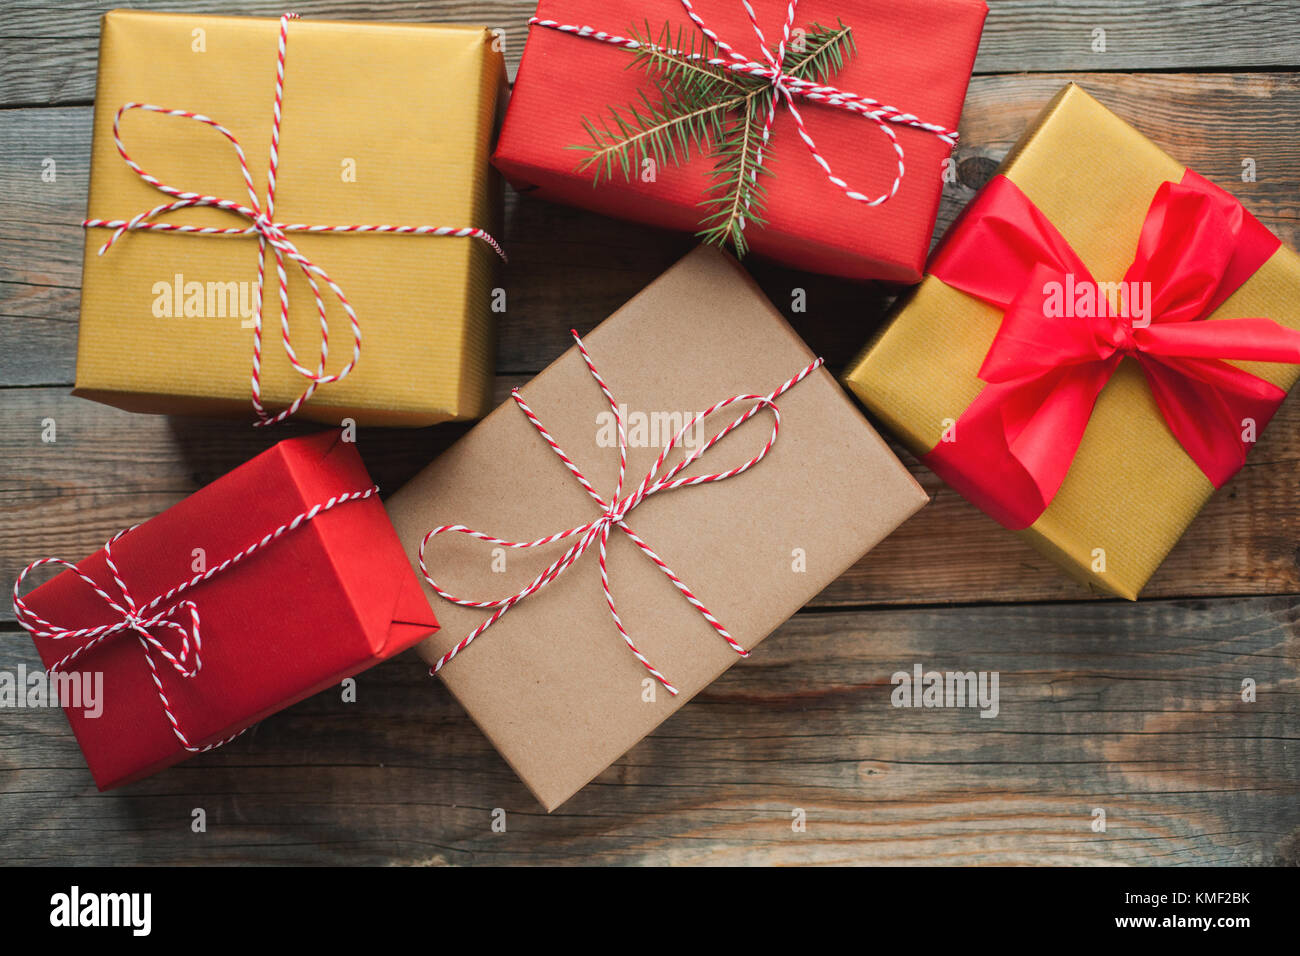 Weihnachtshintergrund mit Geschenkschachteln auf Holzhintergrund. Draufsicht. Schön verpackte, bunte Geschenke für das neue Jahr oder den Tag des Heiligen Stockfoto